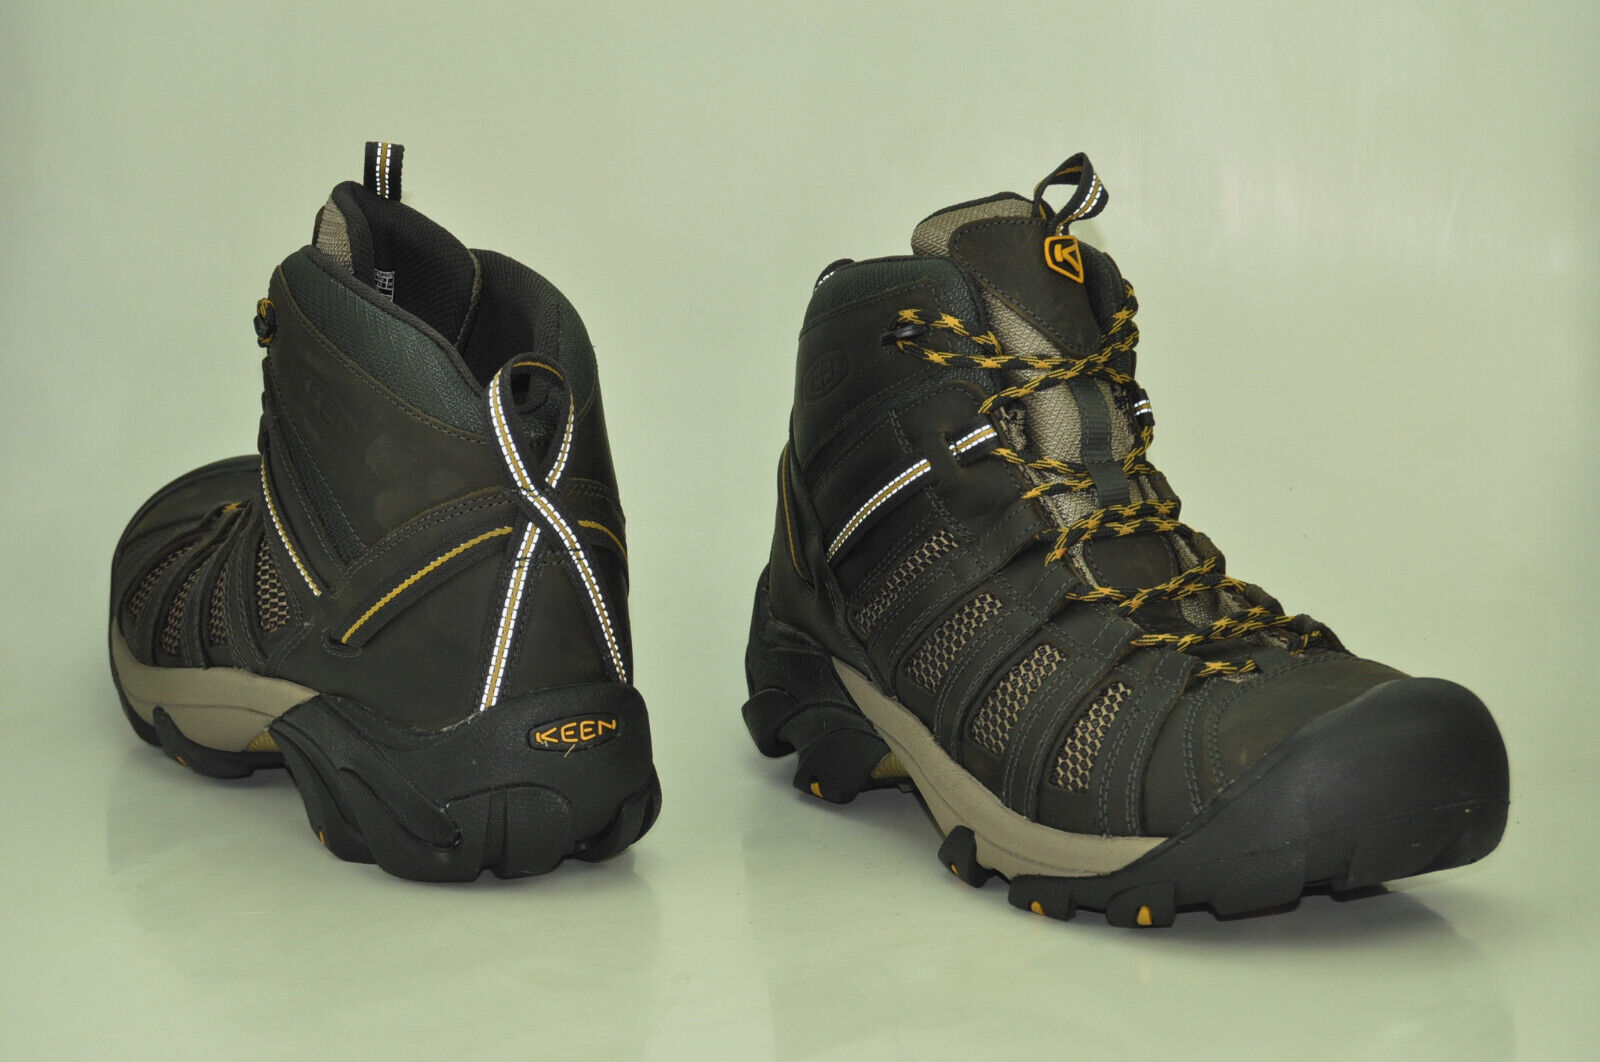 KEEN Voyageur Mid Wanderschuhe Sneaker Outdoorschuhe Schuhe Boots Herren